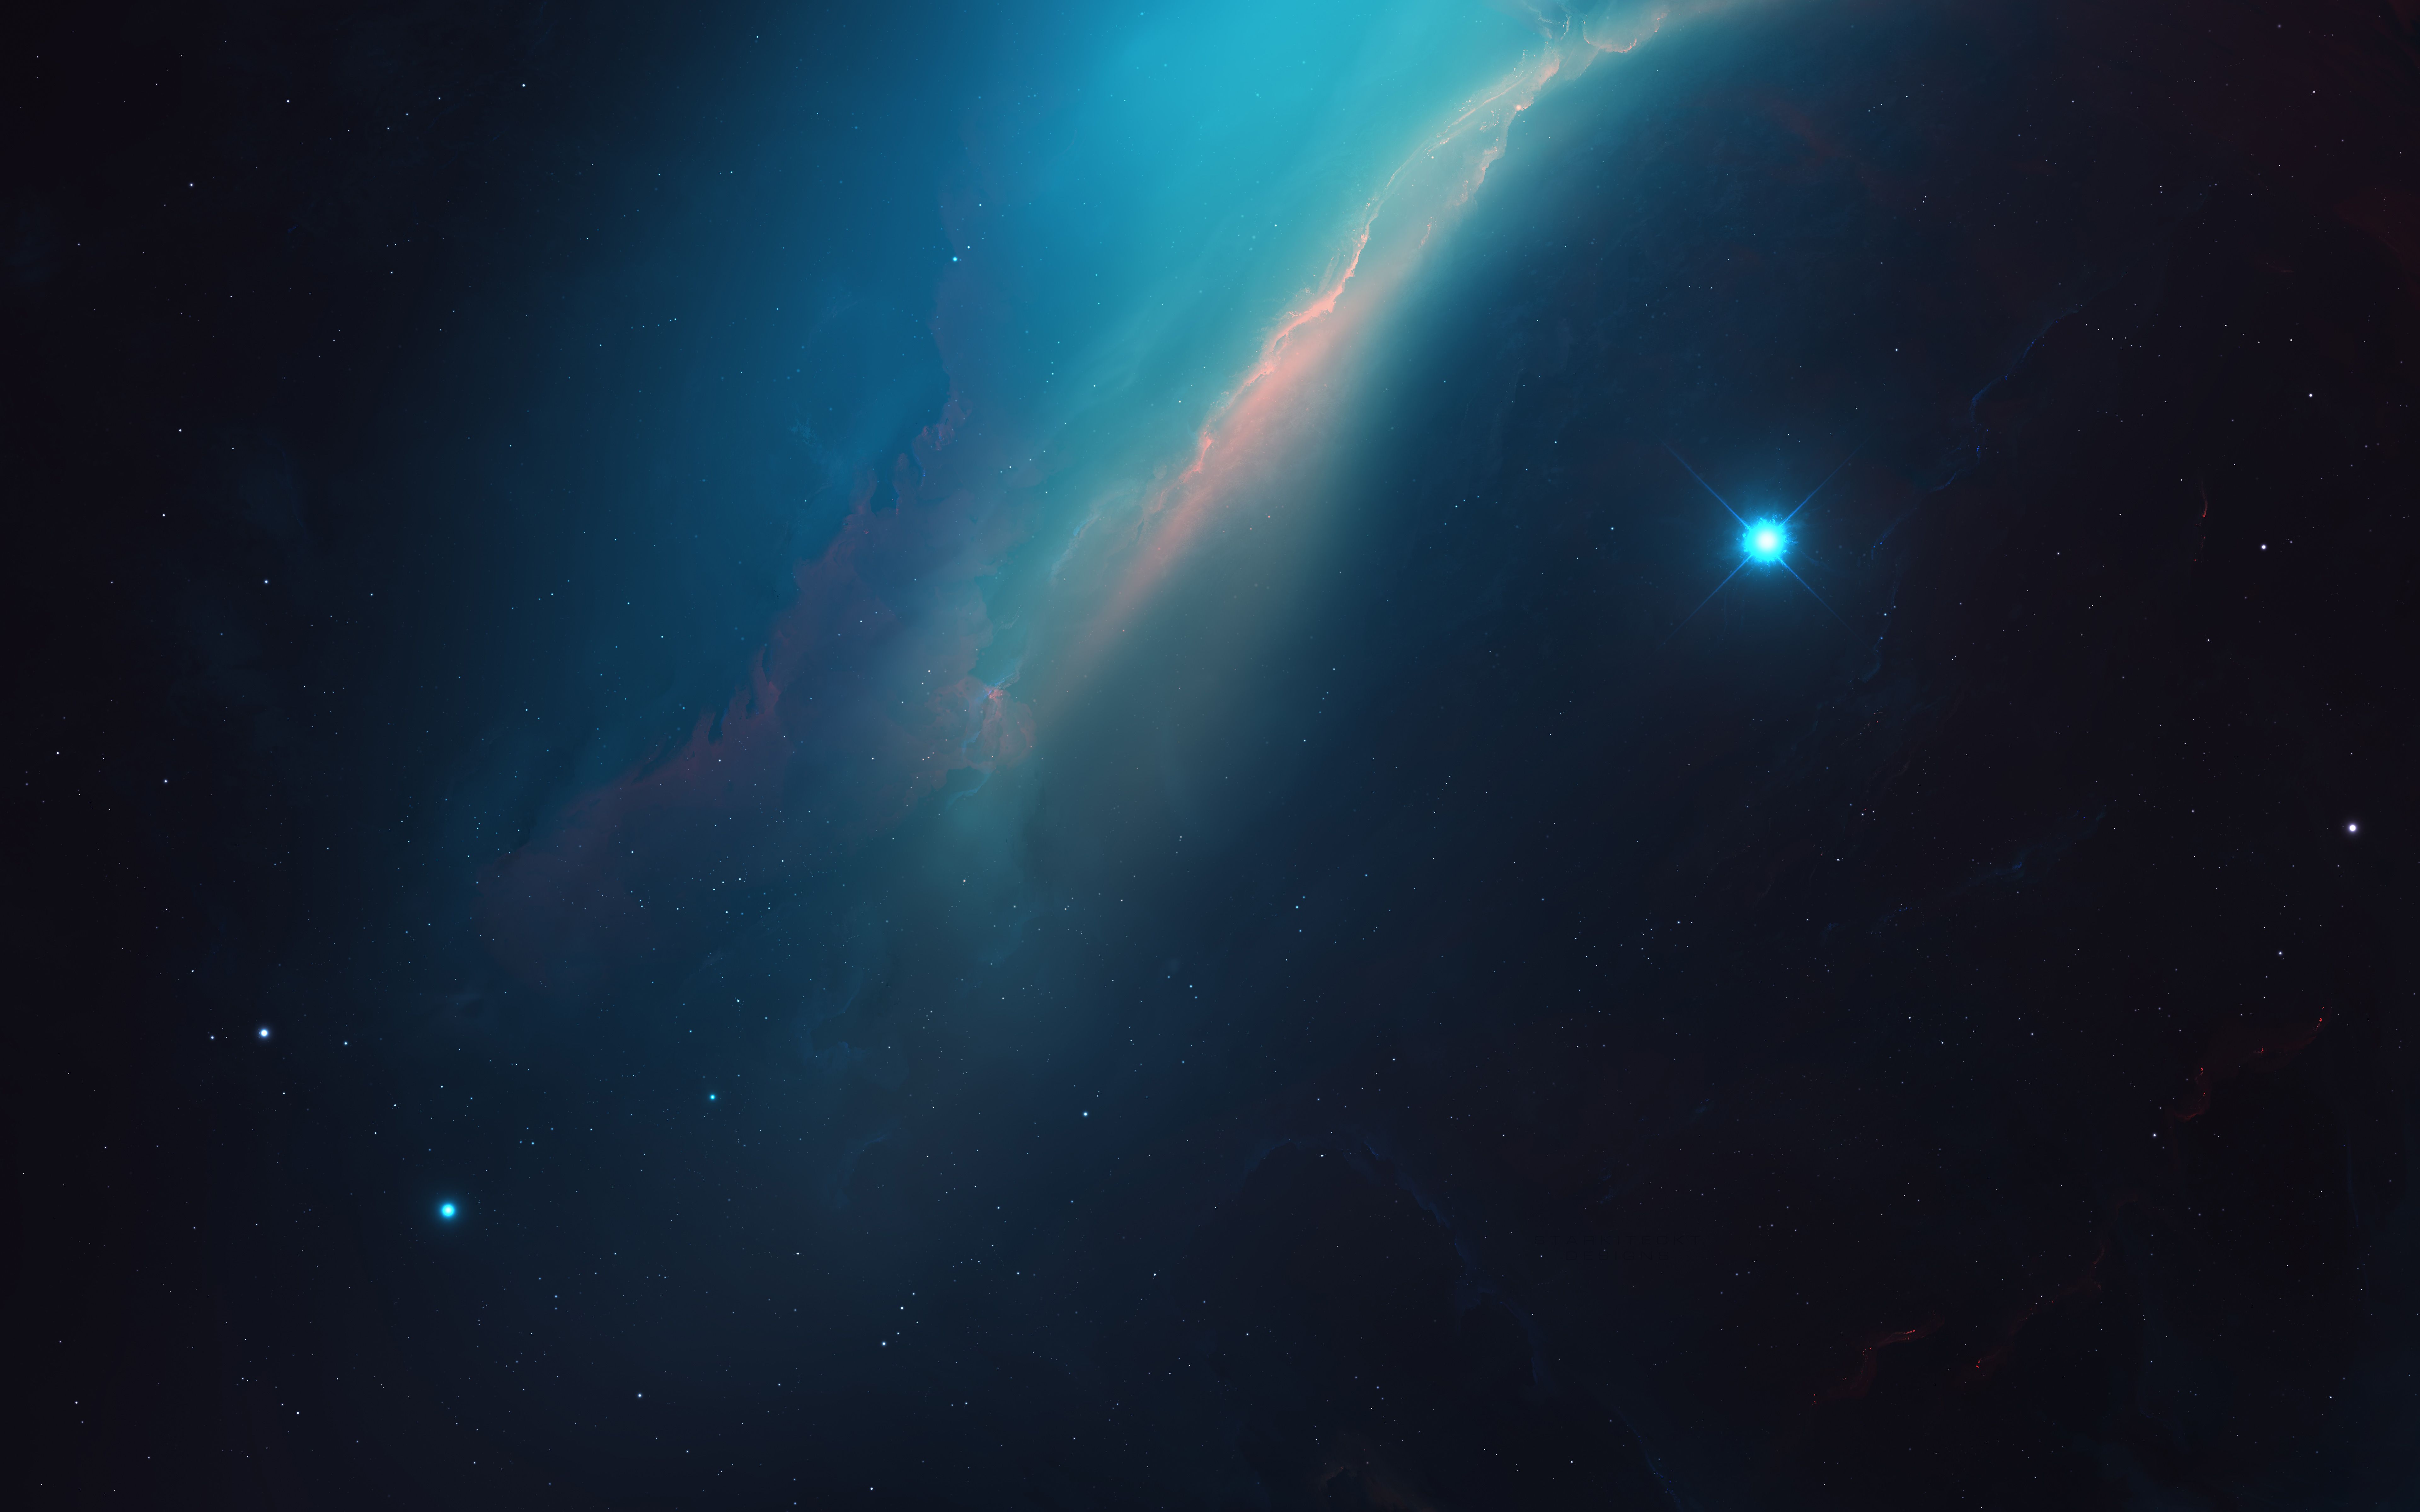 سحابی فضایی (space nebula)